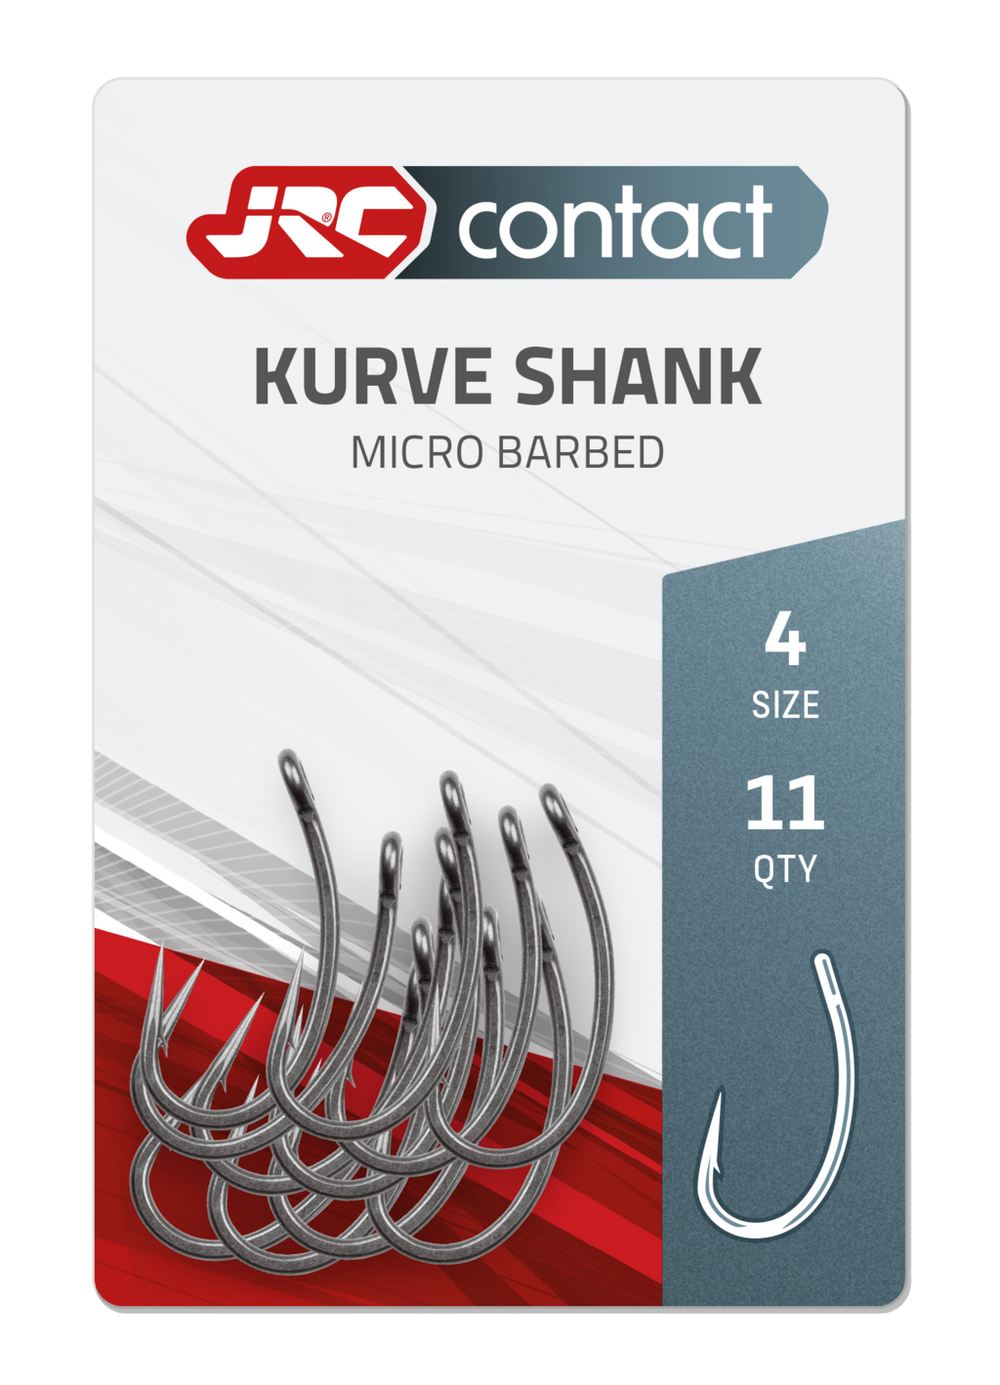 JRC Contact Kurve Shank Karpfenhaken 4